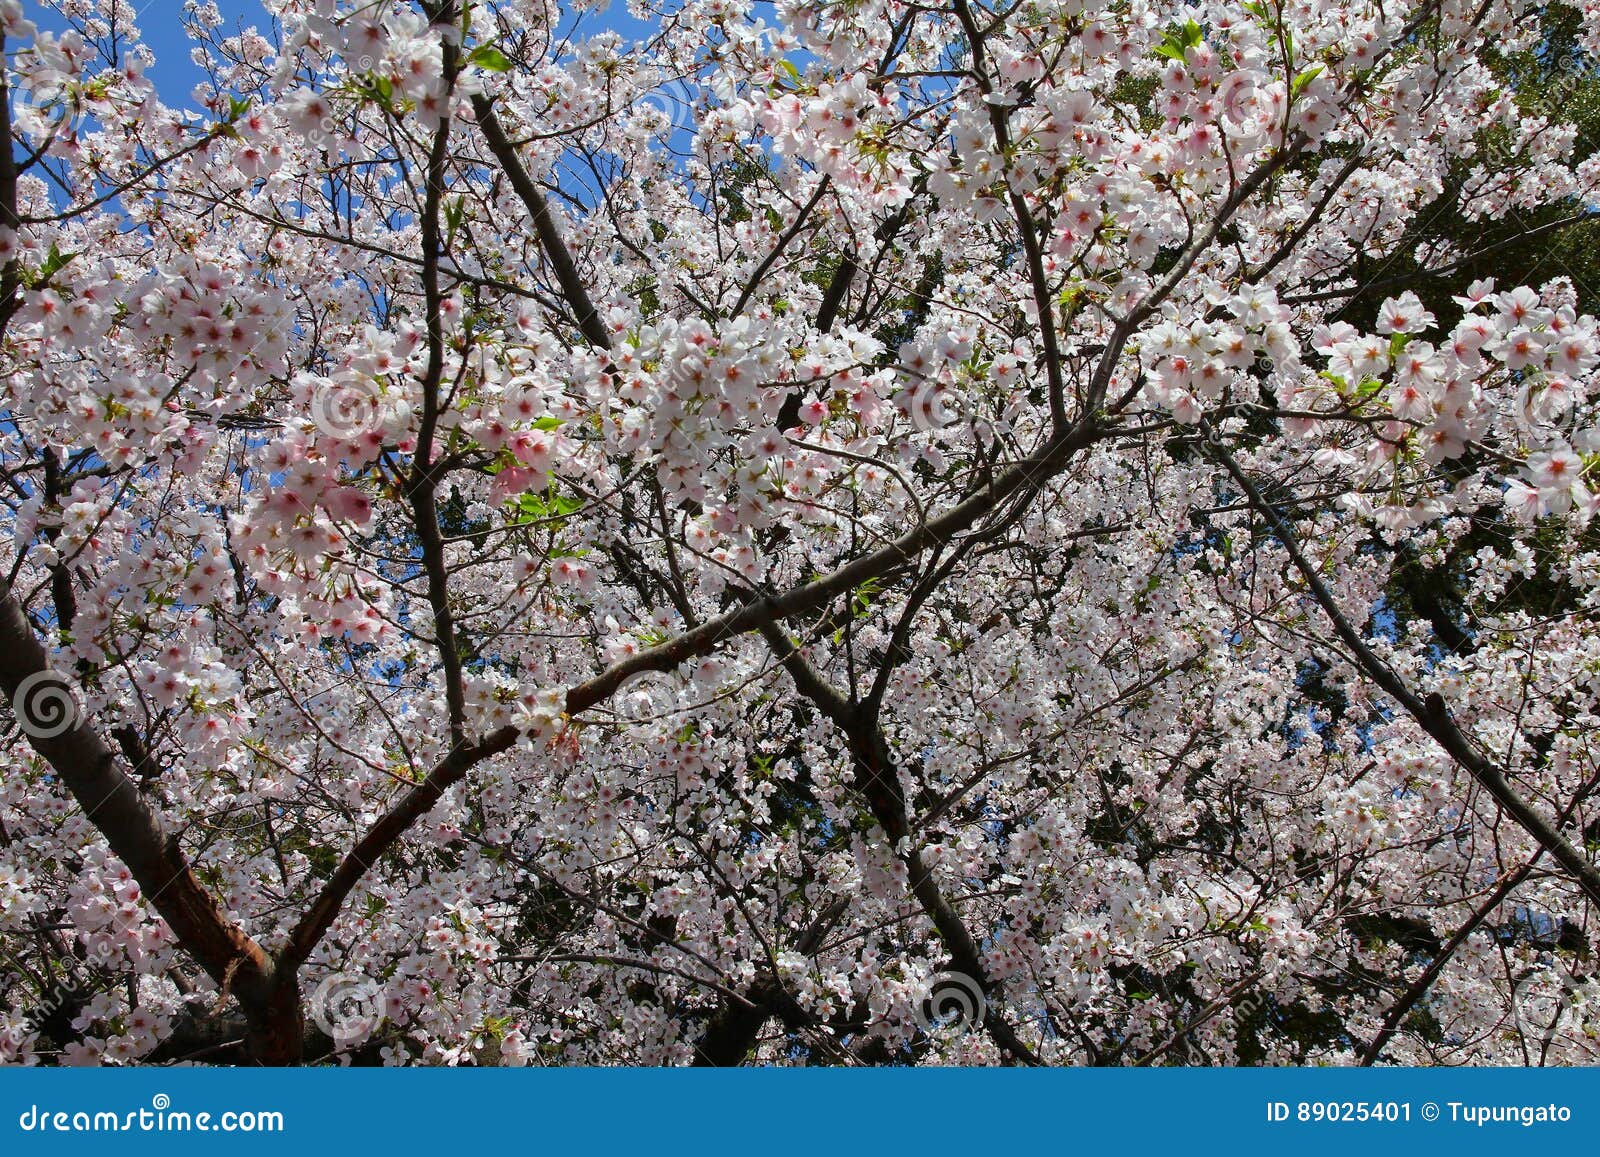 Sakura tree stock image. Image of sakura, blooming, flora - 89025401